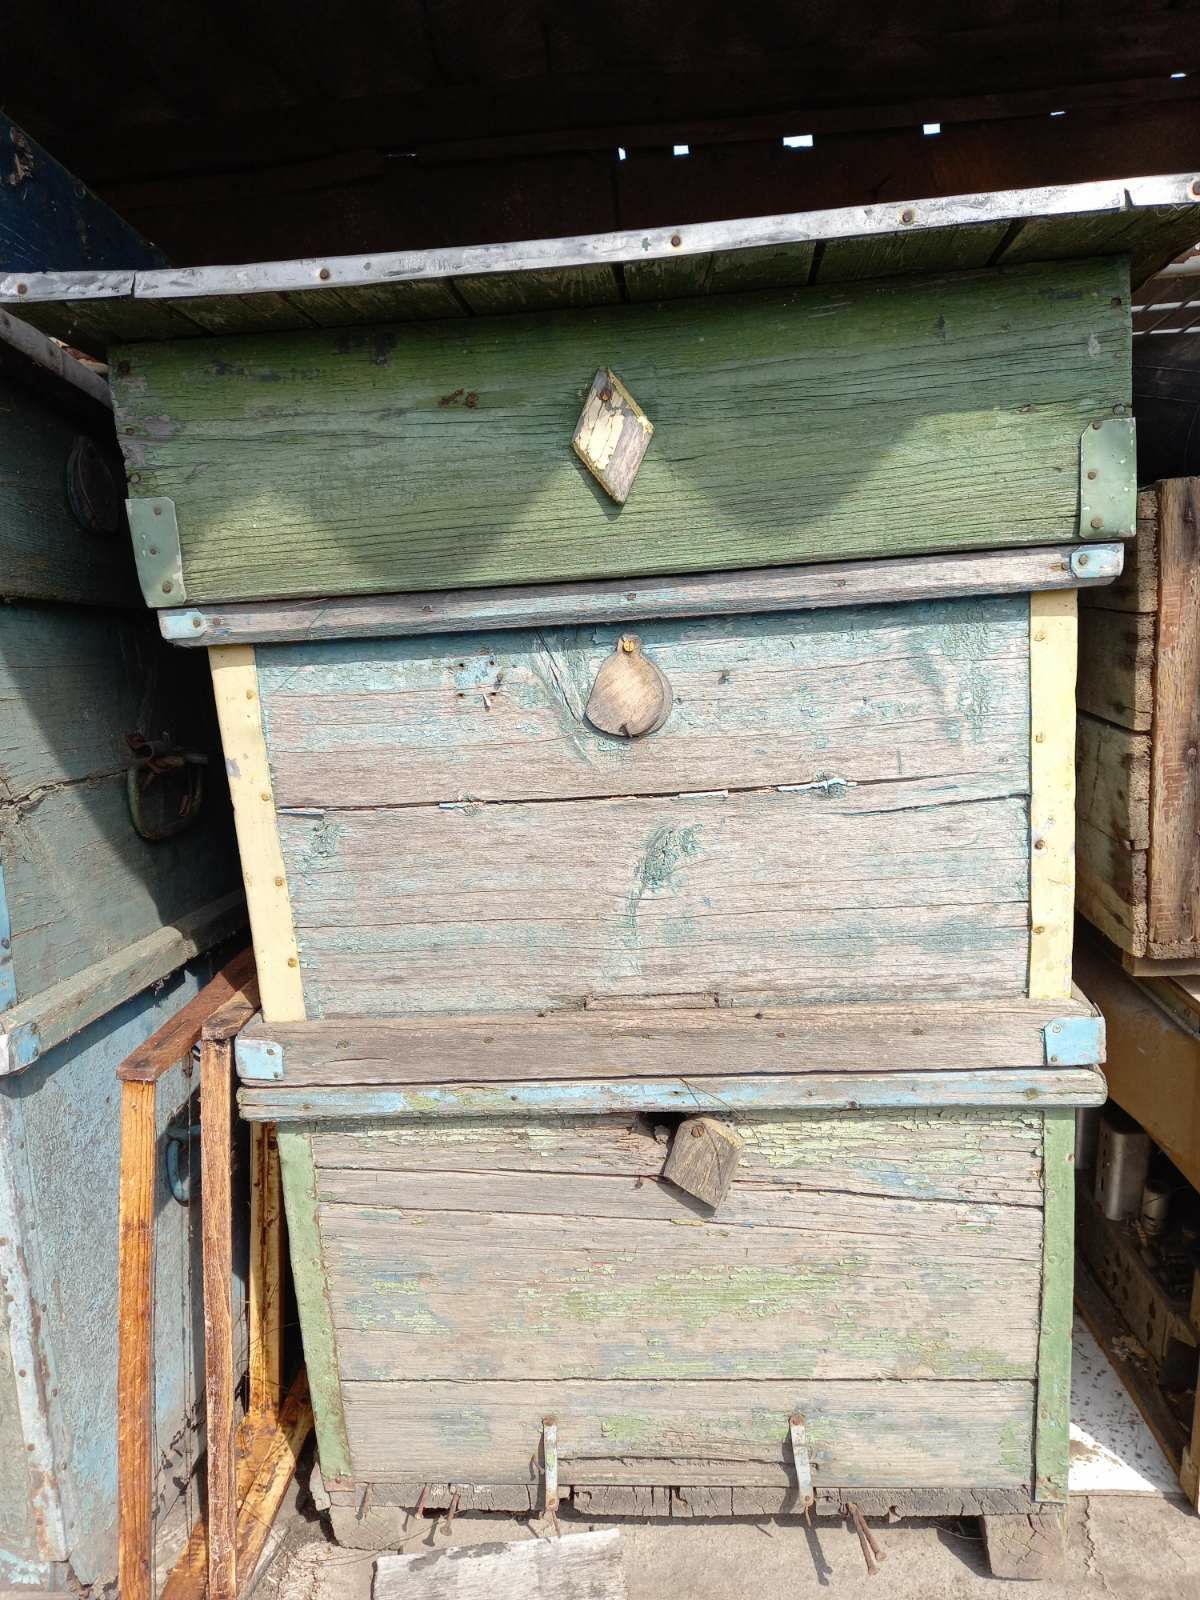 Продам ульи пчелинные